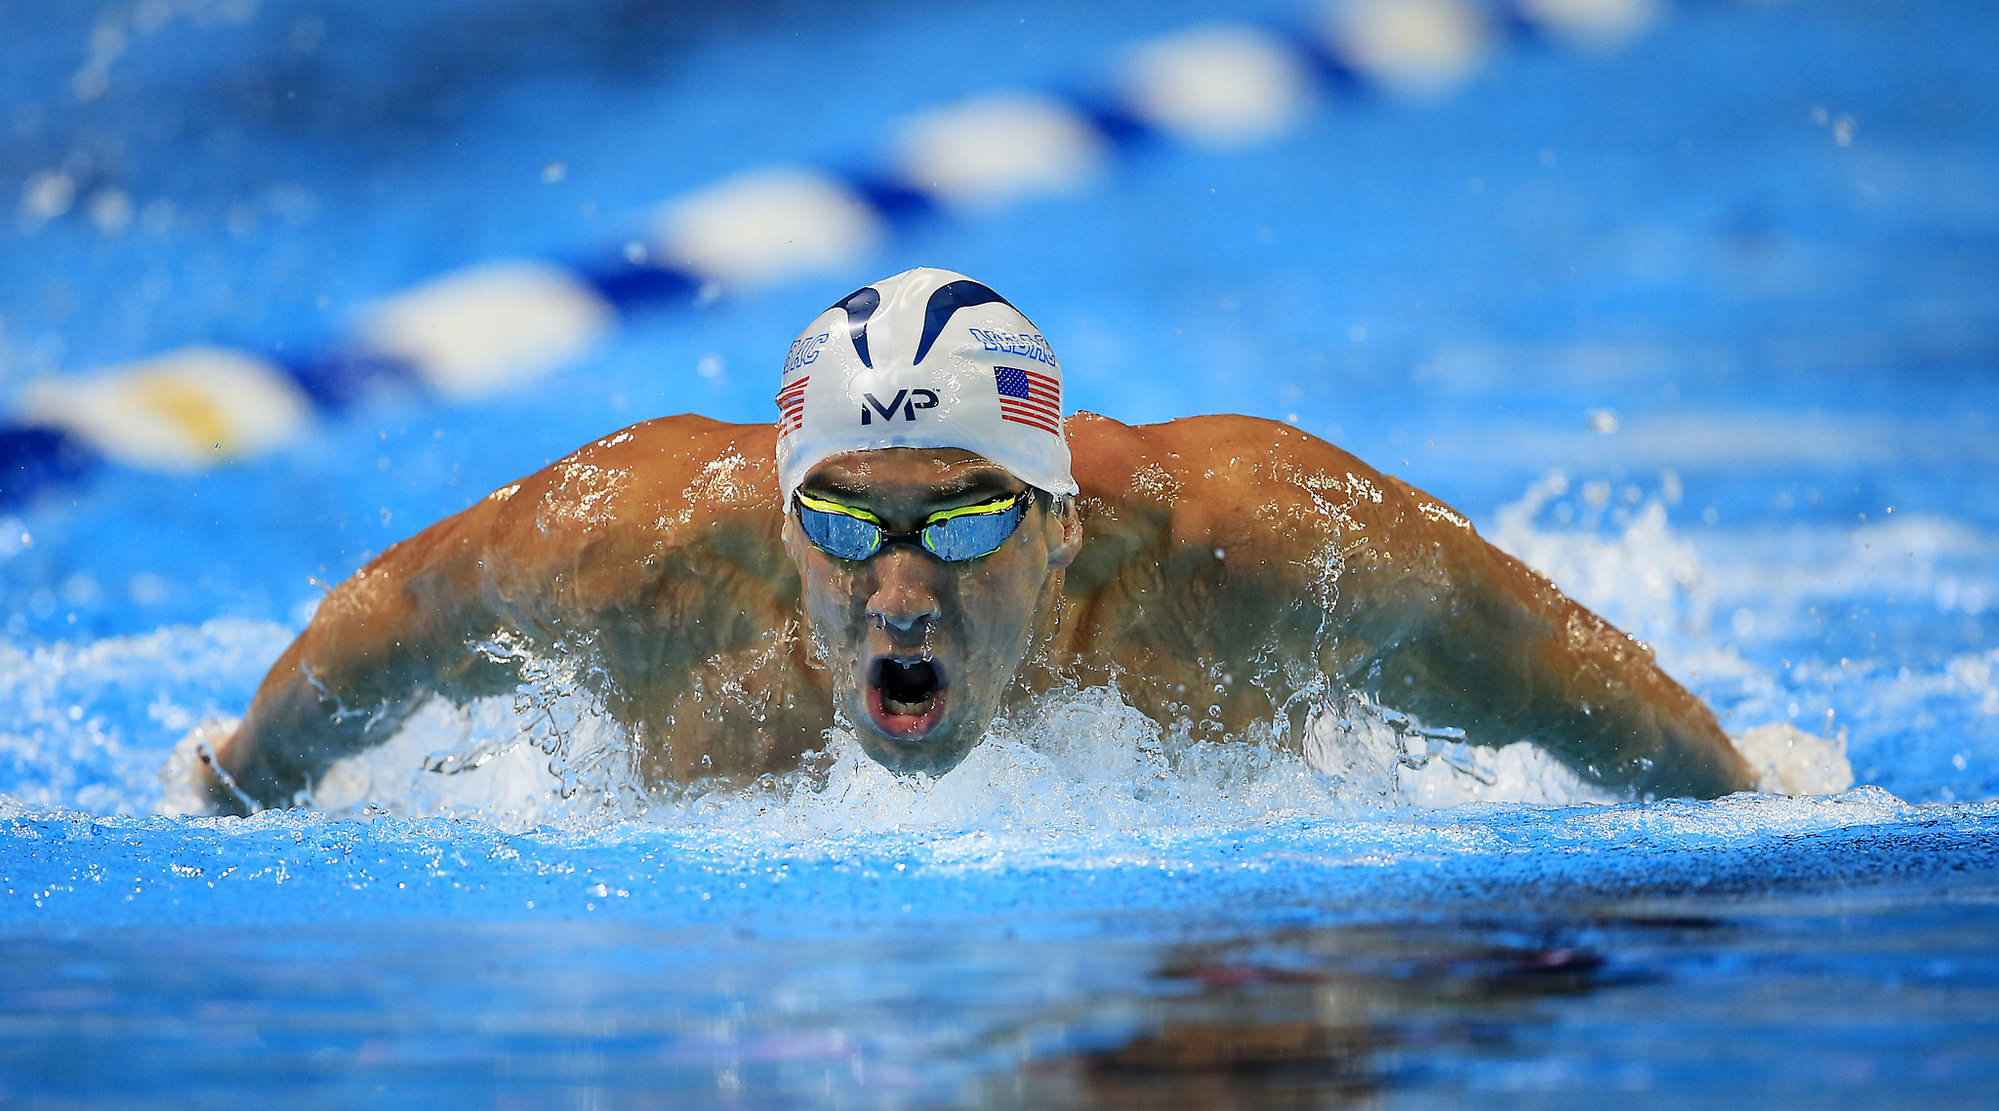 Phelps busca vaga em três provas individuais - Foto: Orlin Wagner/AP Photo